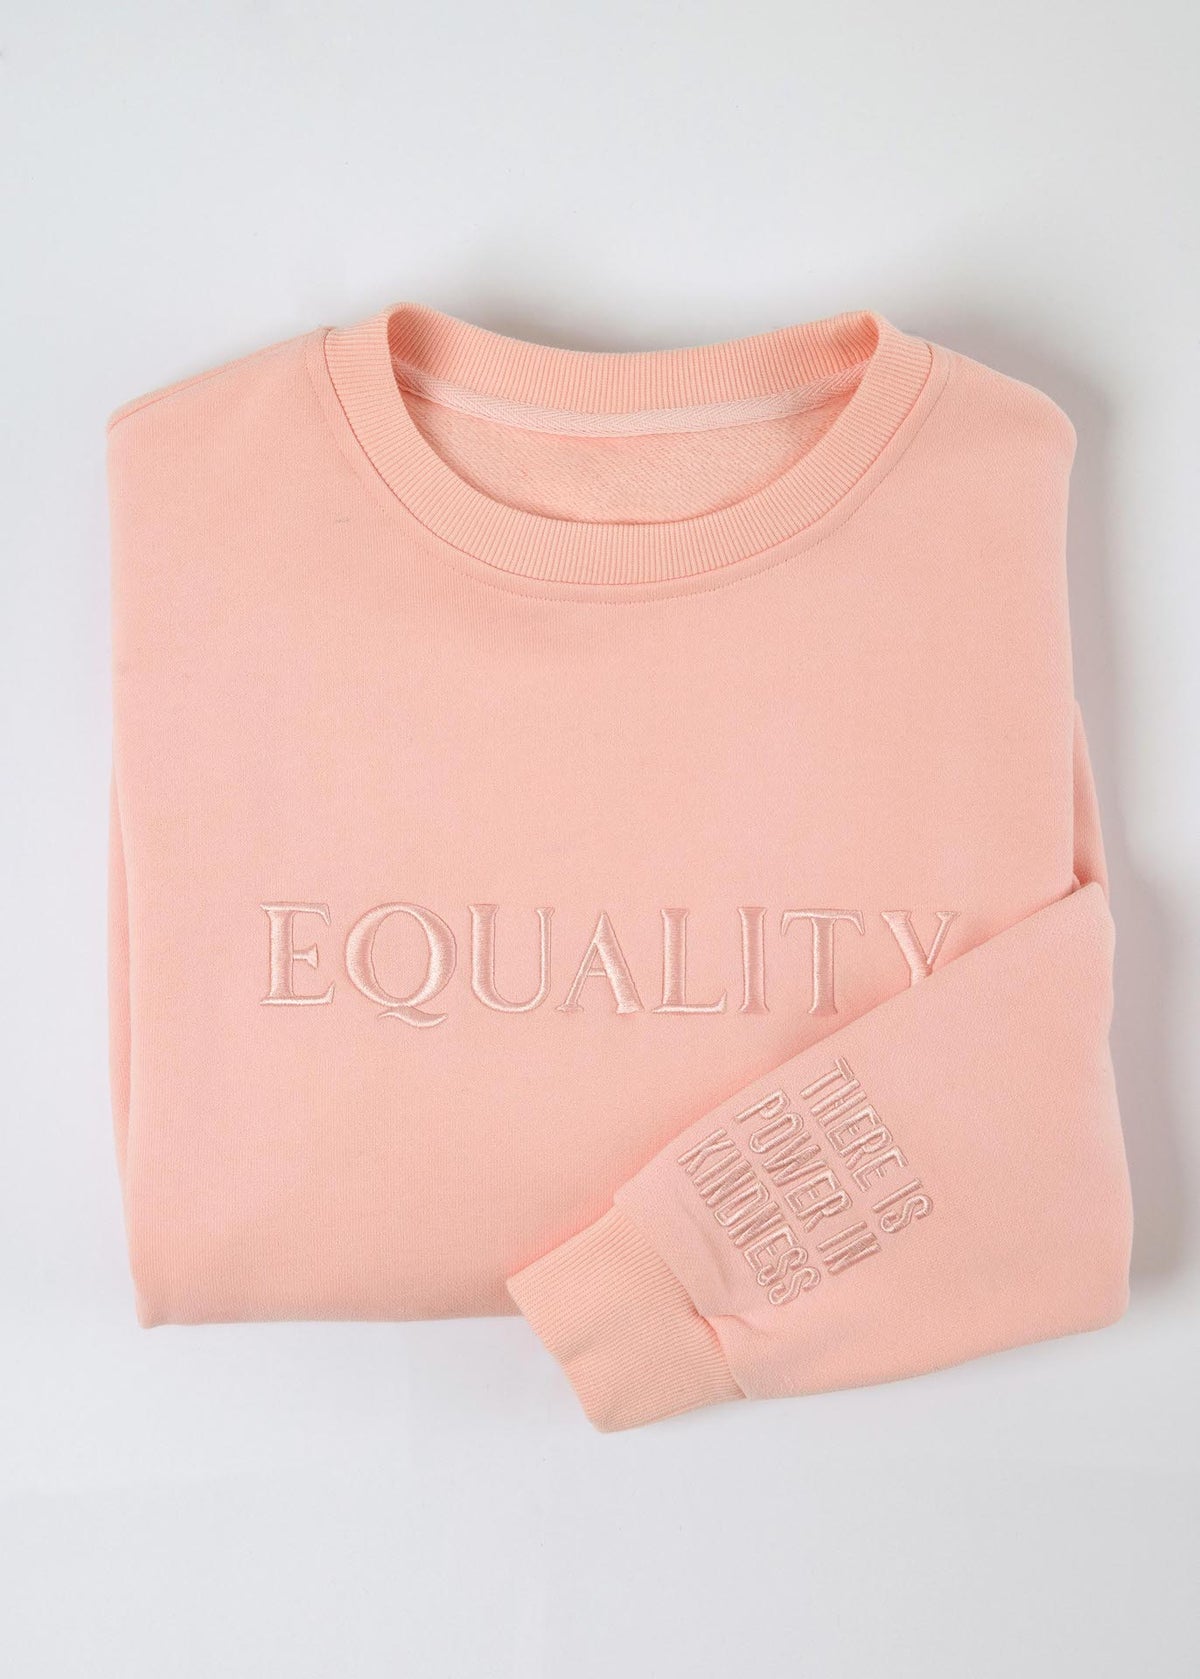 Equality Embroidered Sweatshirt